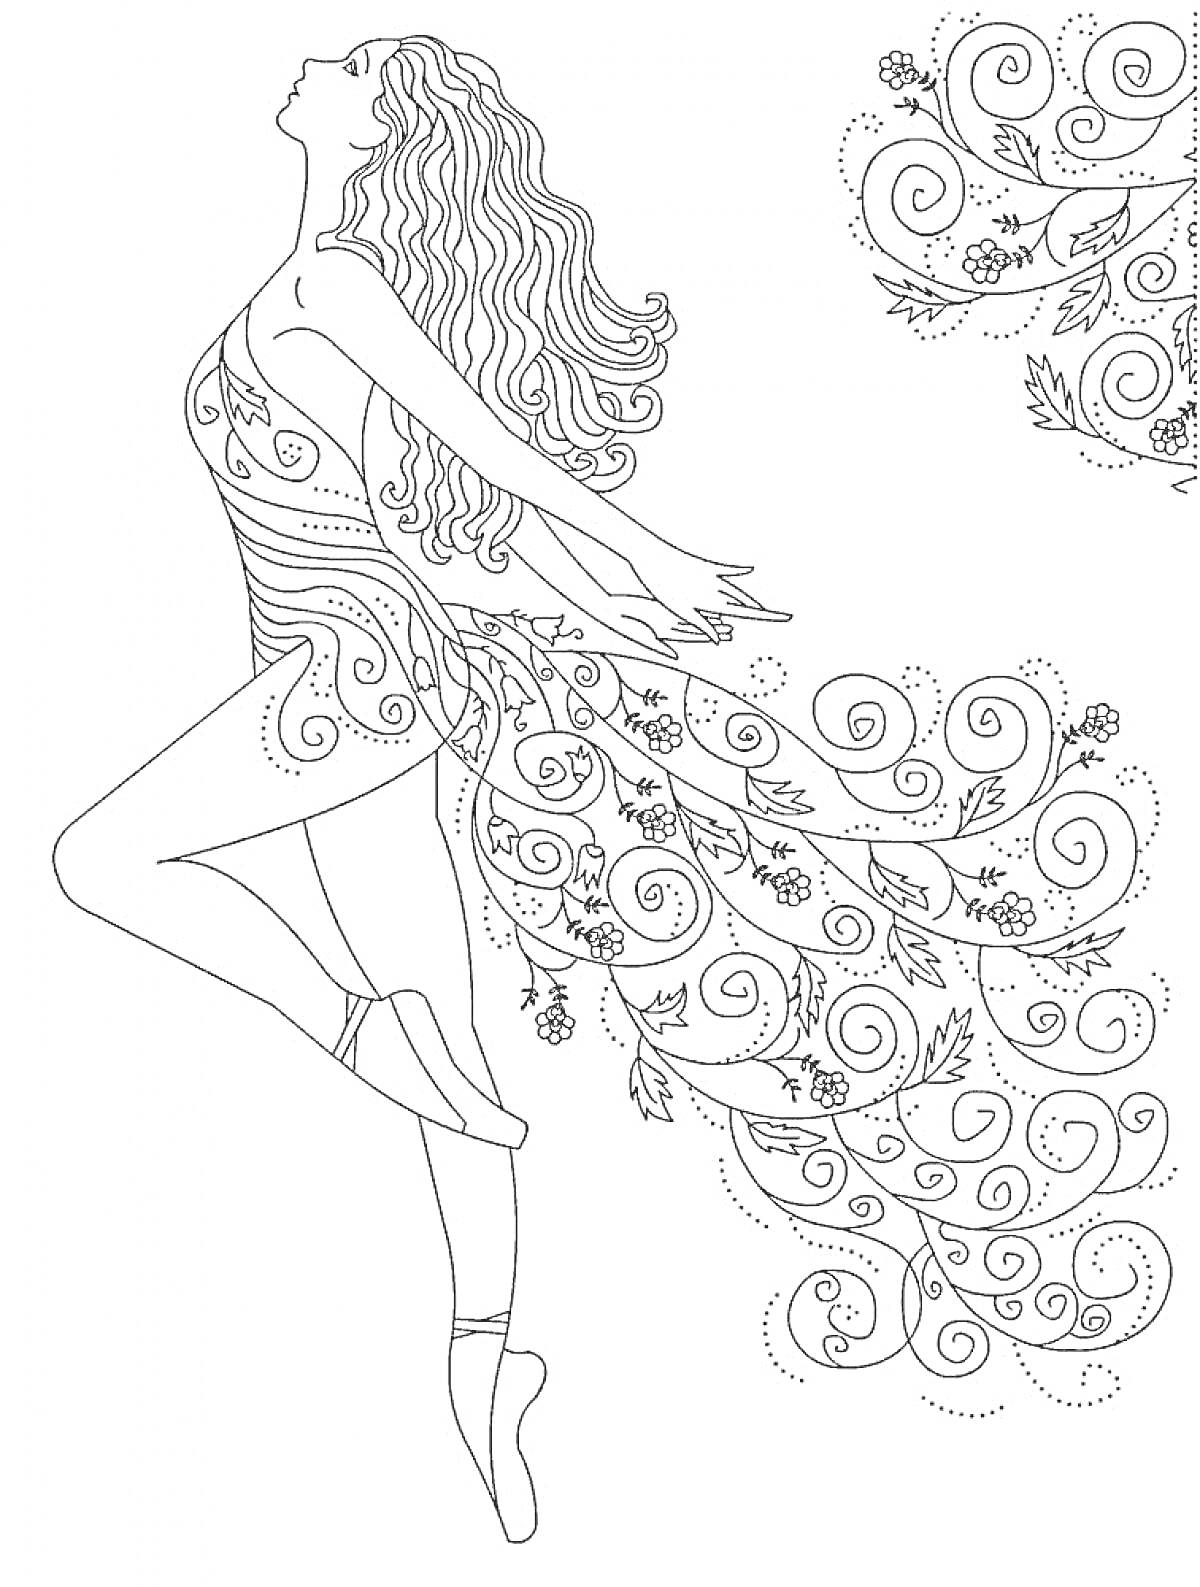 Раскраска Балерина с длинными волосами в пачке с цветочными и узорными элементами, на пуантах, с задним фоном в виде завитков и узоров